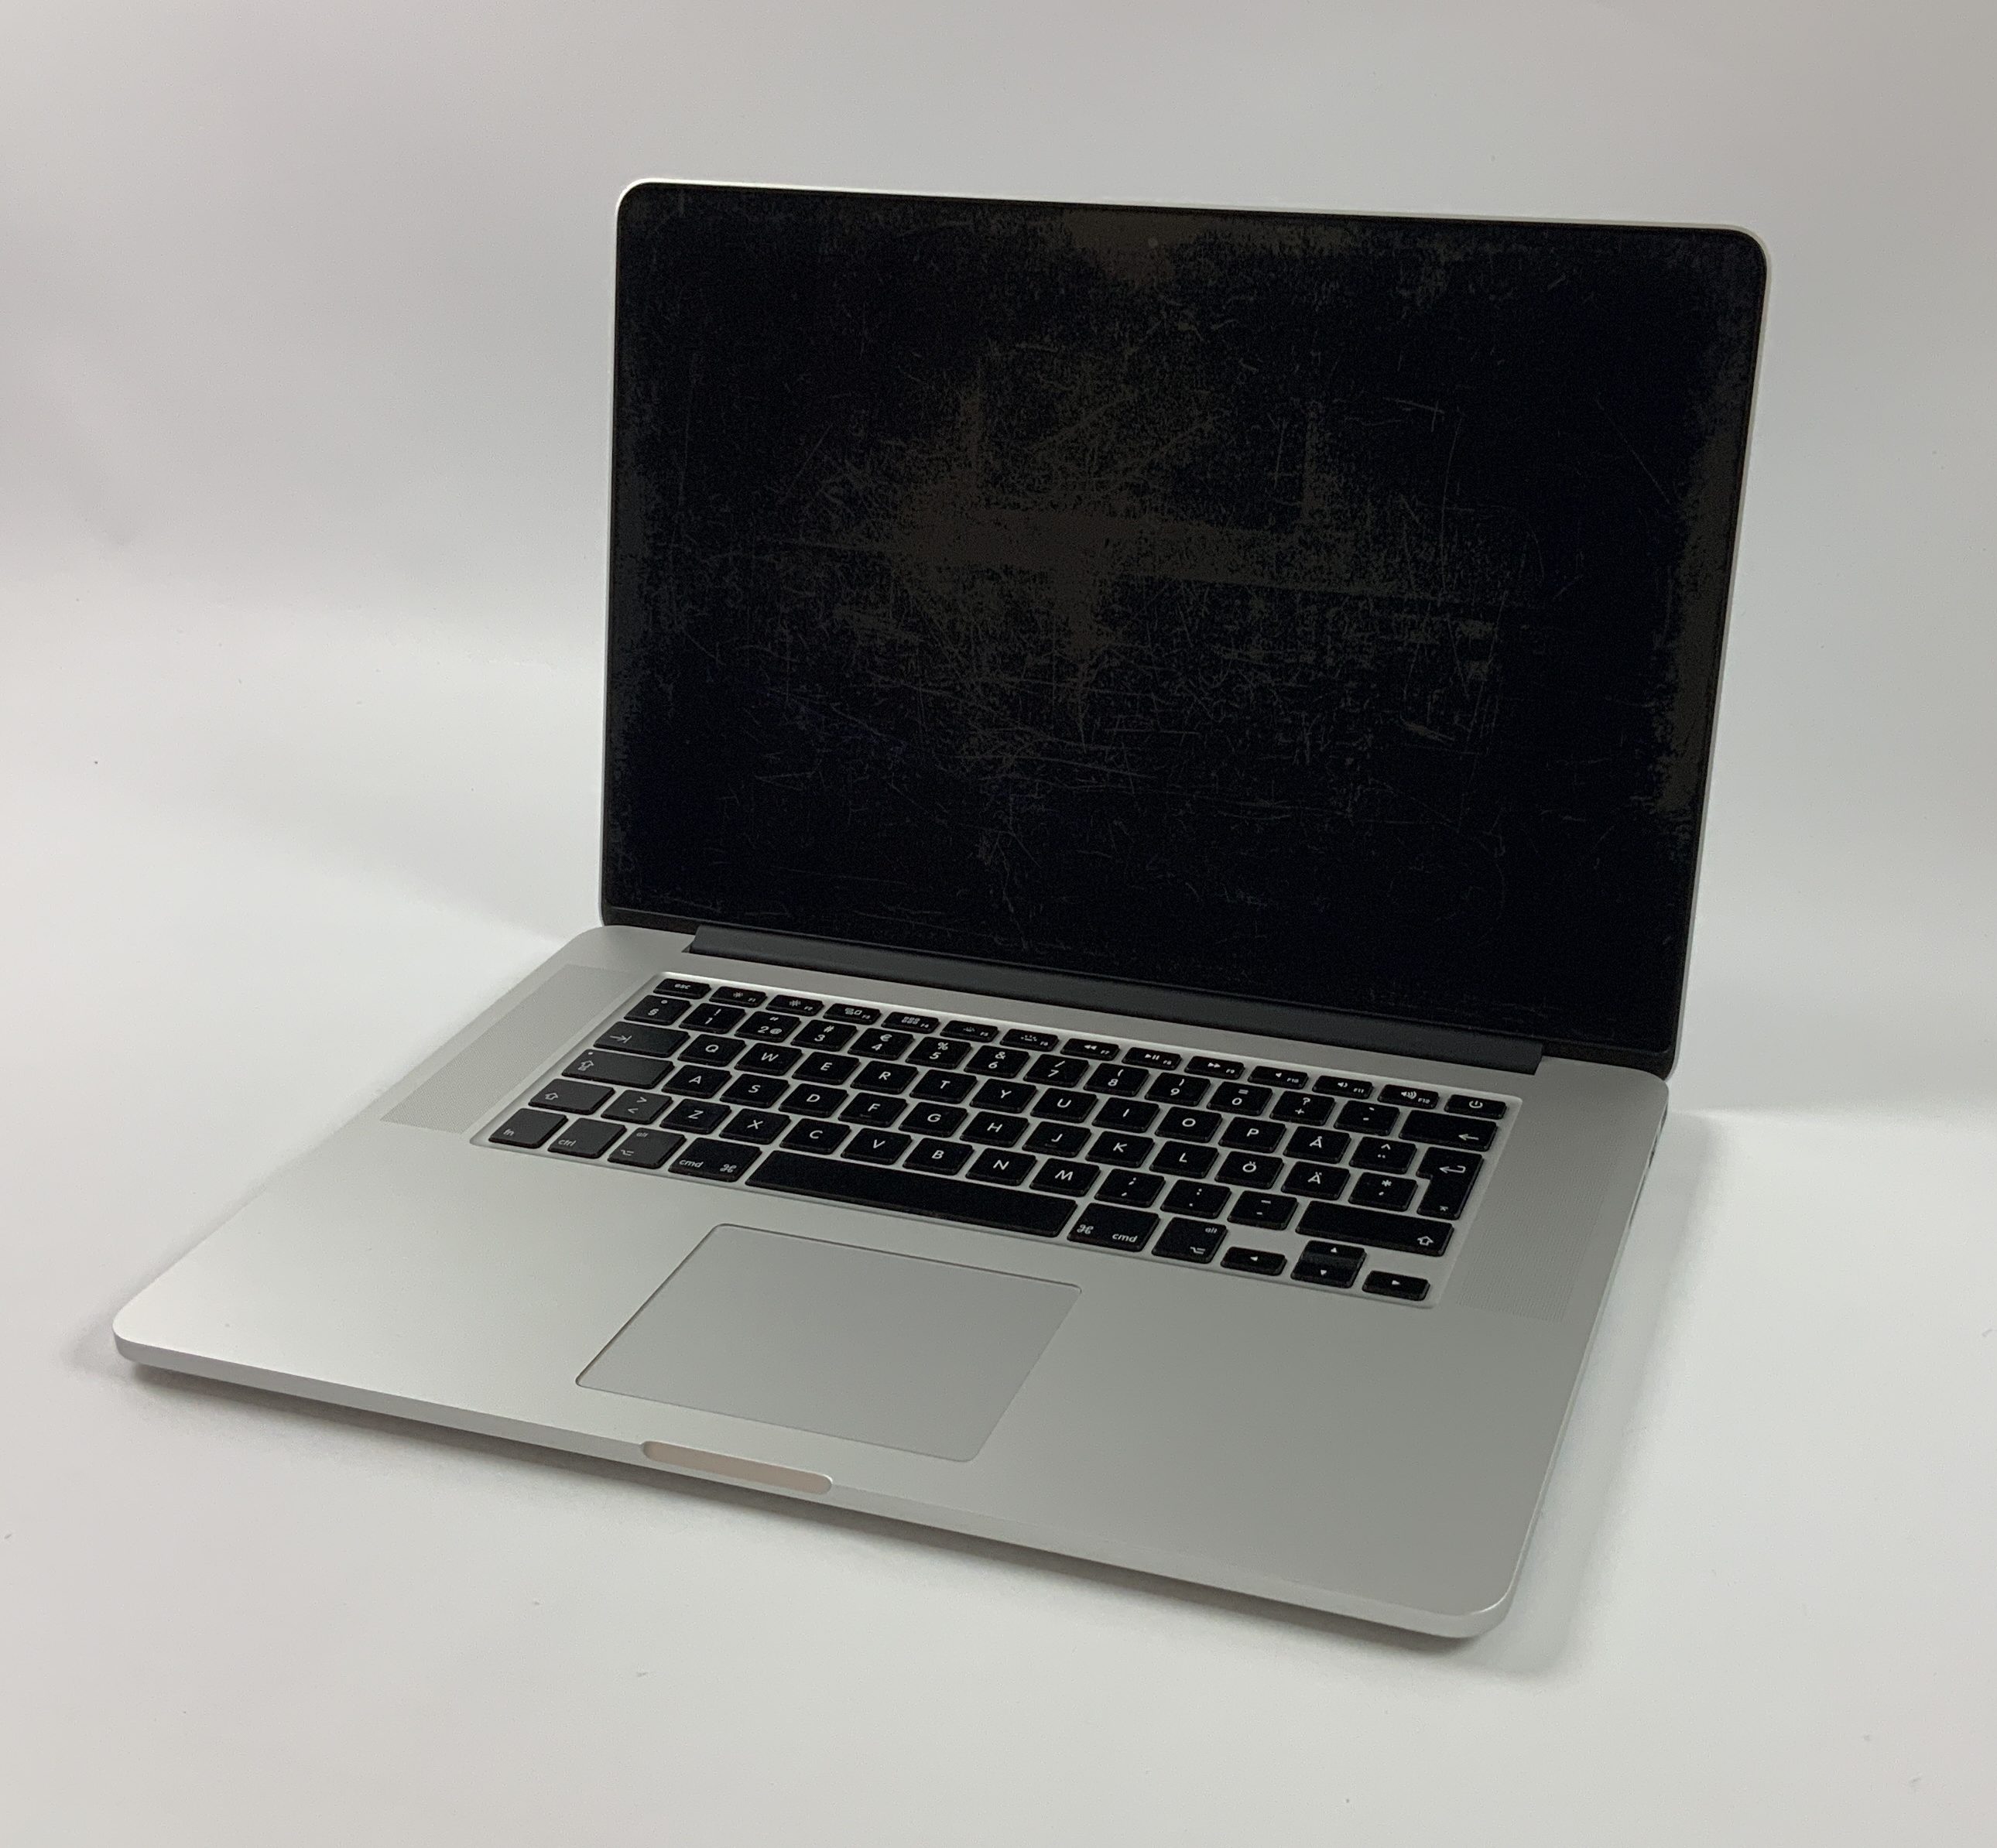 MacBook Pro Retina 15" Mid 2015 (Intel Quad-Core i7 2.2 GHz 16 GB RAM 512 GB SSD), Intel Quad-Core i7 2.2 GHz, 16 GB RAM, 512 GB SSD, imagen 1